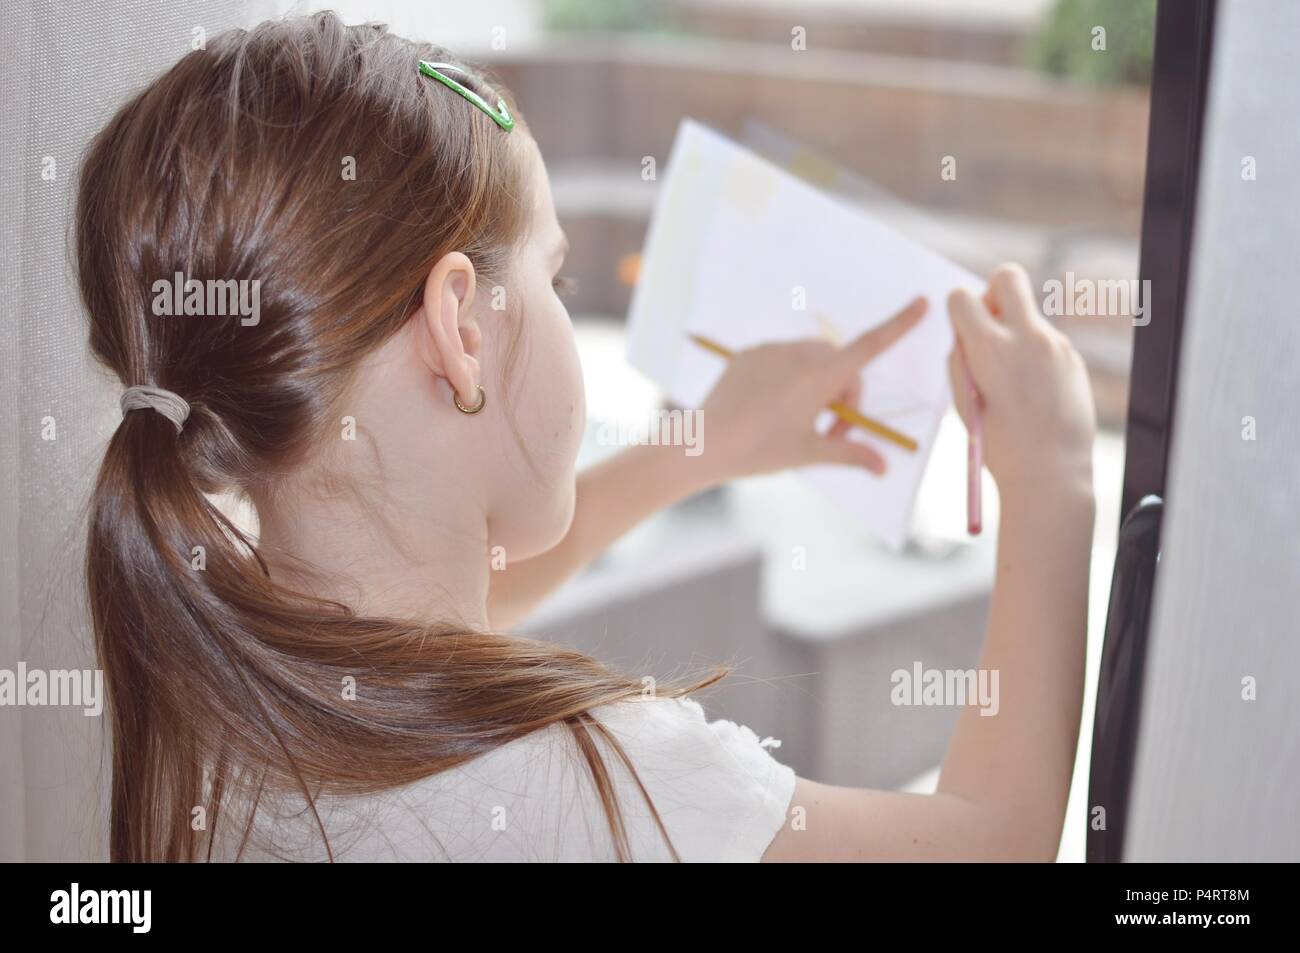 Kind, Mädchen 7-9, blondes Haar, Zeichnung auf einem weißen Blatt Papier auf dem Glas, selektiven Fokus unterstützt, zurück Portrait Stockfoto